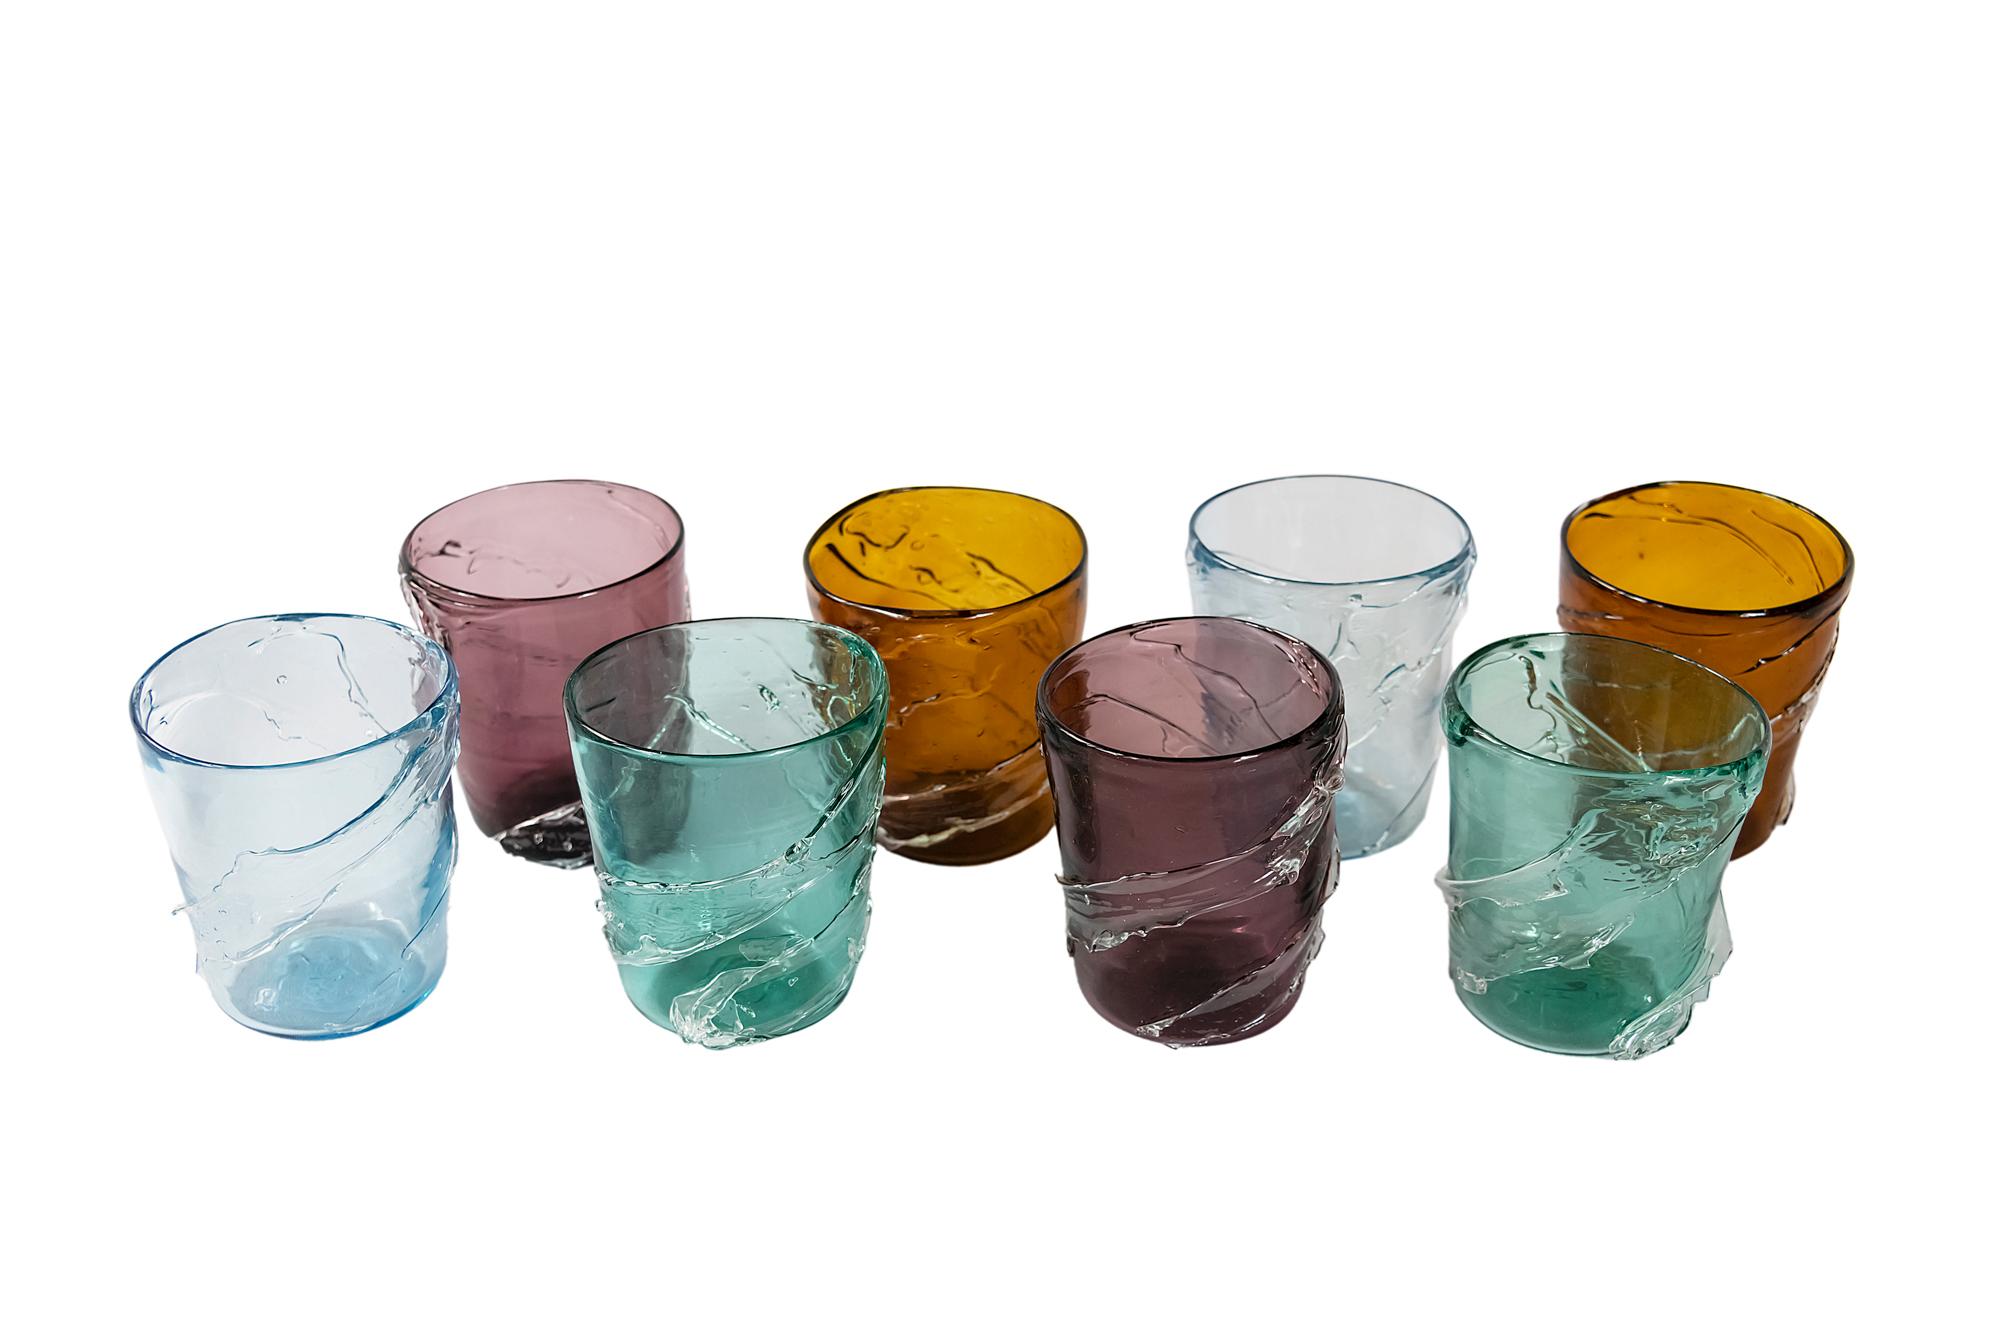 Das Set besteht aus 8 Teilen. Handgefertigte italienische Murano-Gläser in verschiedenen Farben.
Sehr guter Zustand.

